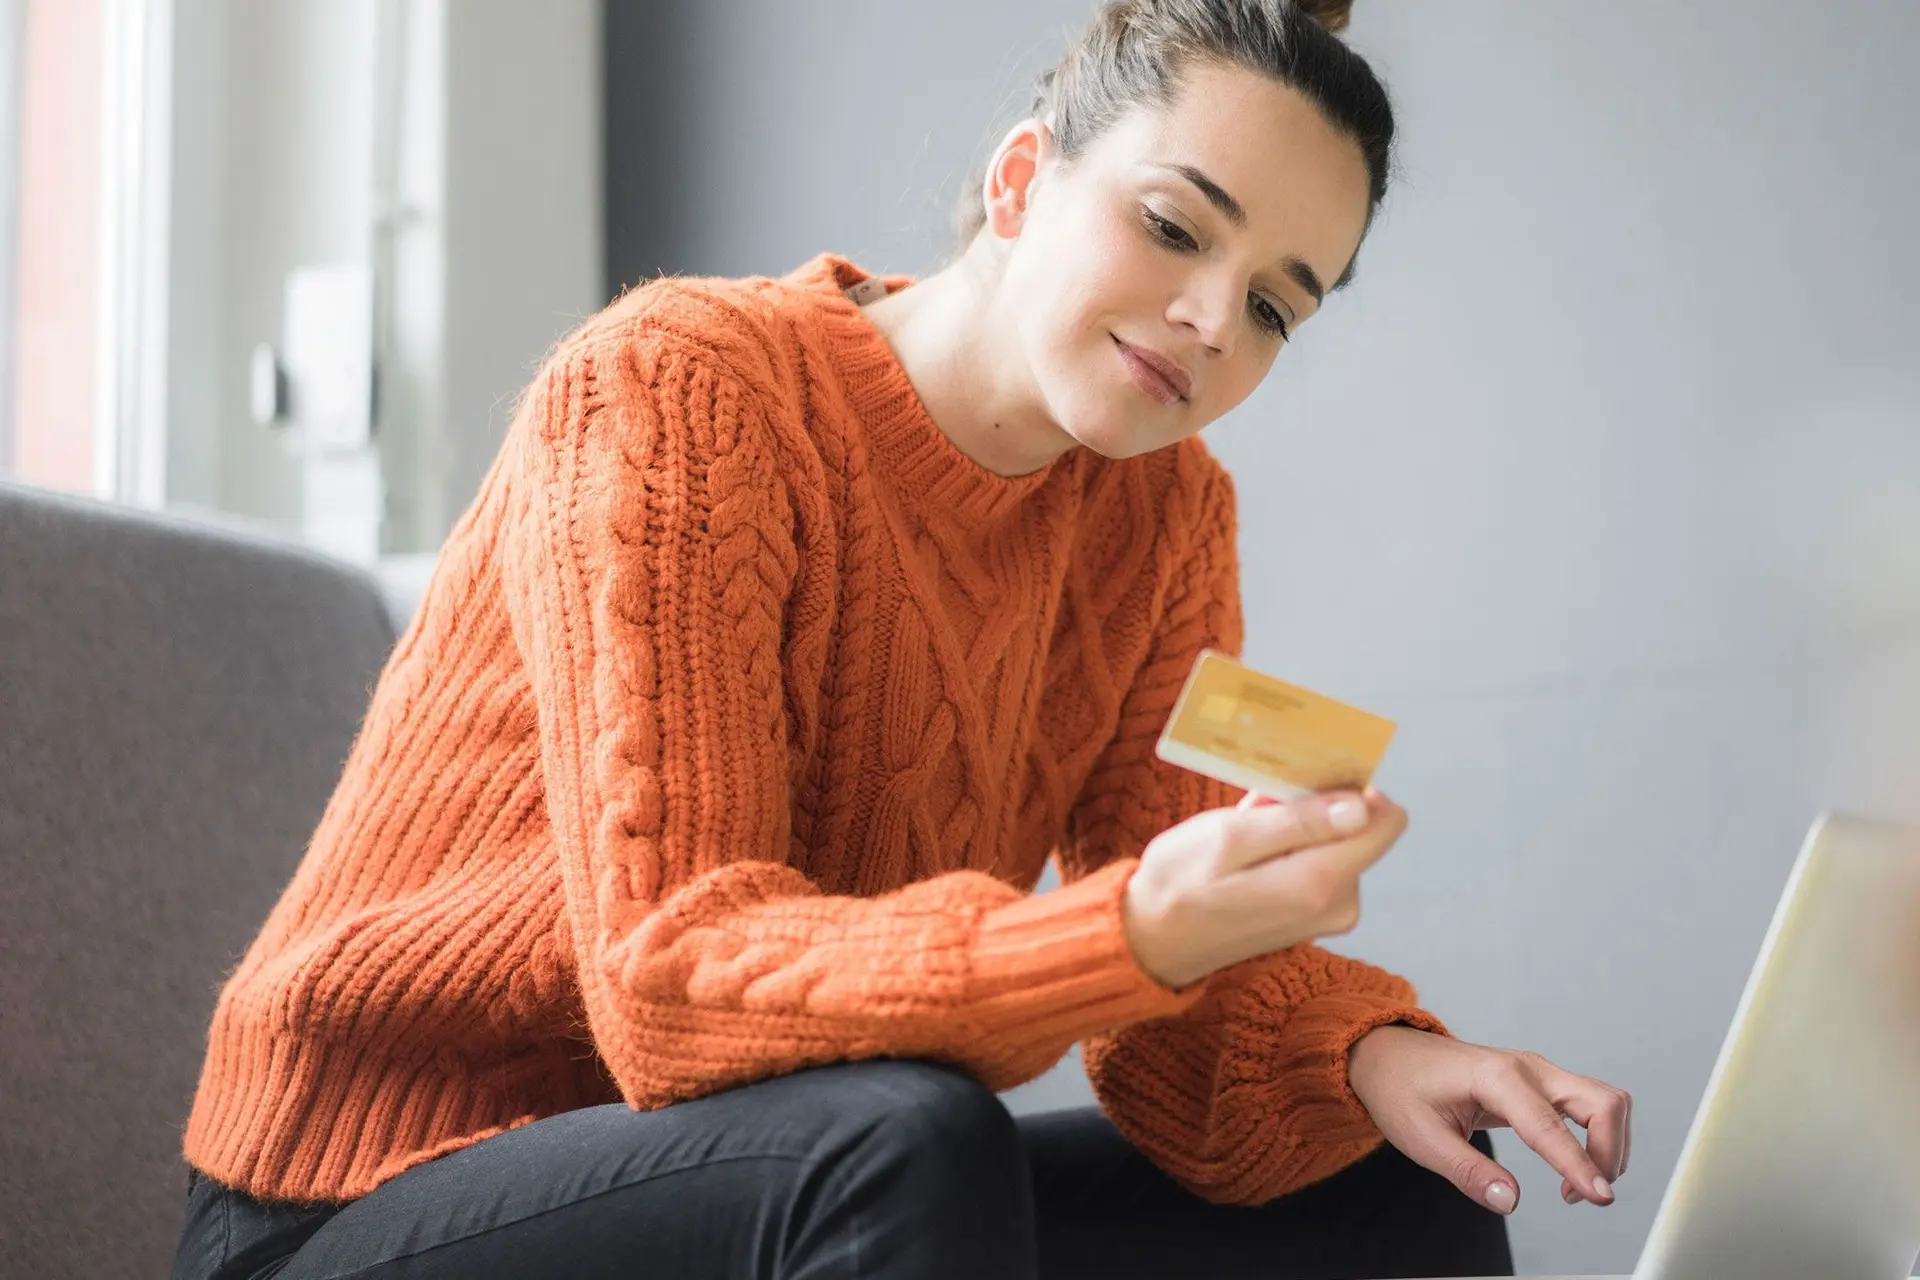 Junge Frau mit einer Bankkarte in der Hand sitzt auf einem Sessel und betrachtet die Rückseite der Karte. Vor ihr ist ein Laptop aufgebaut.